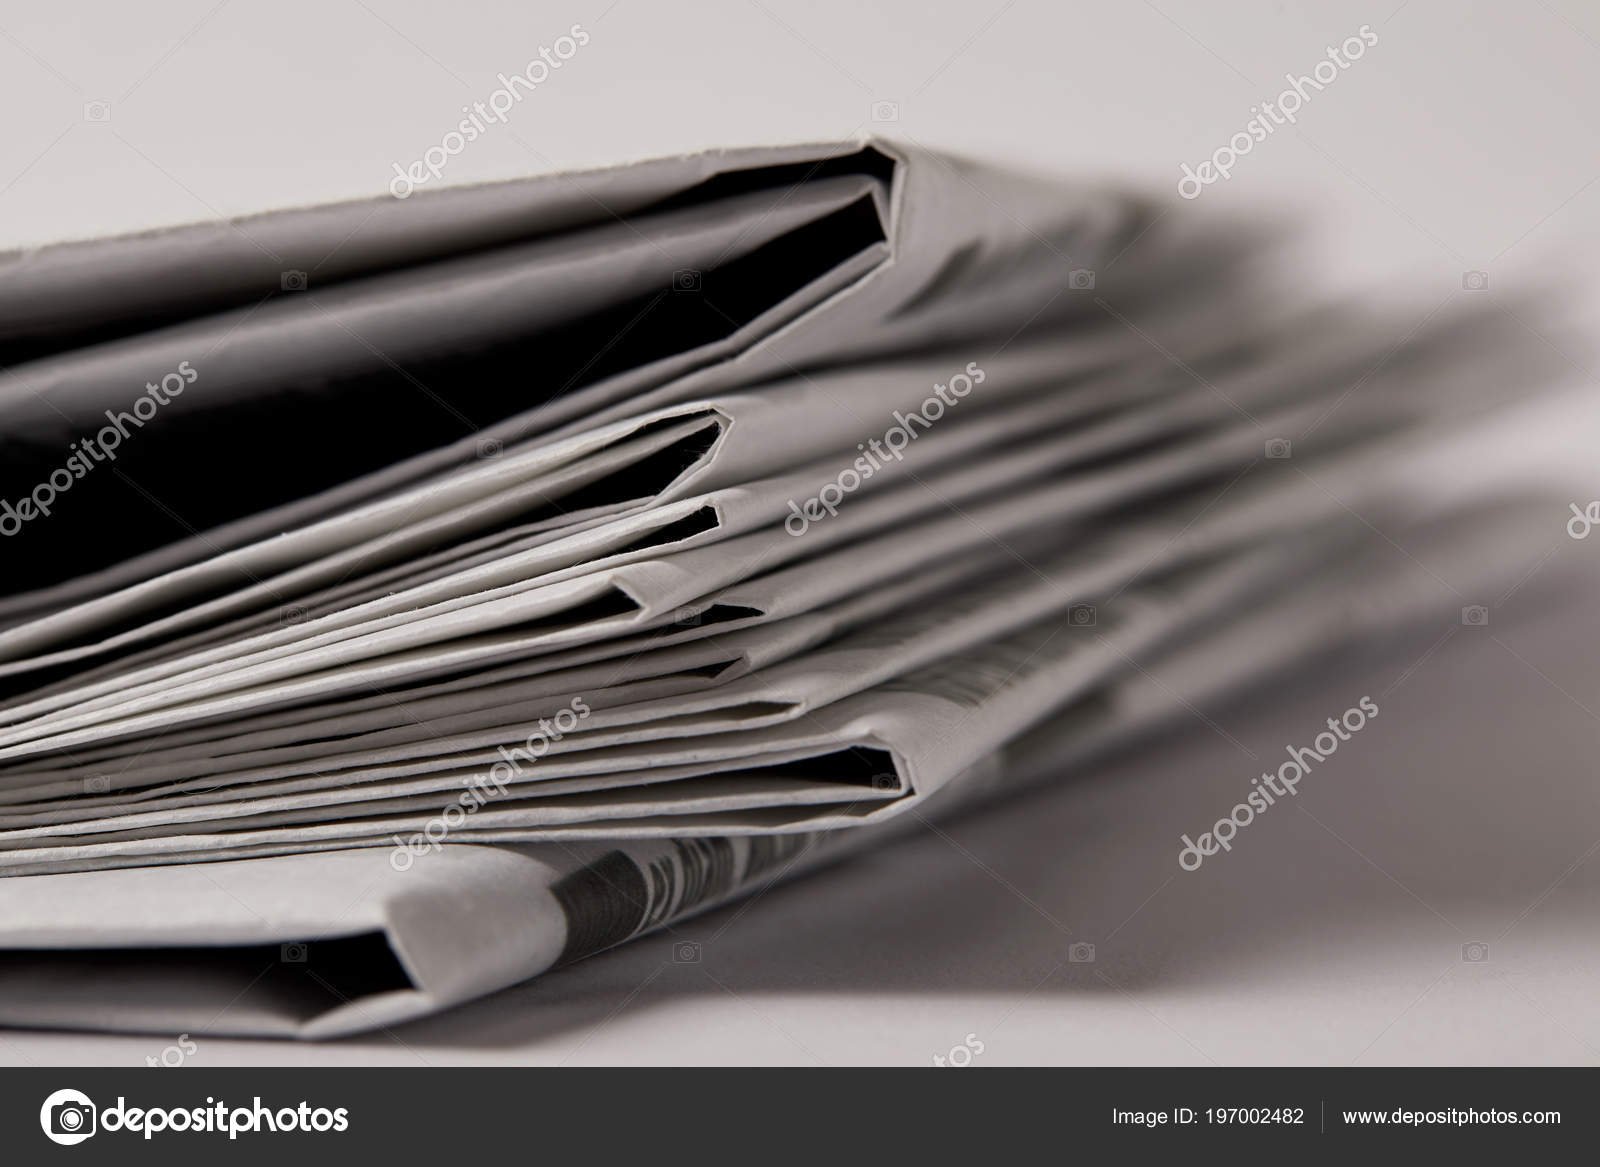 depositphotos_197002482-stock-photo-close-pile-newspapers-selective-focus